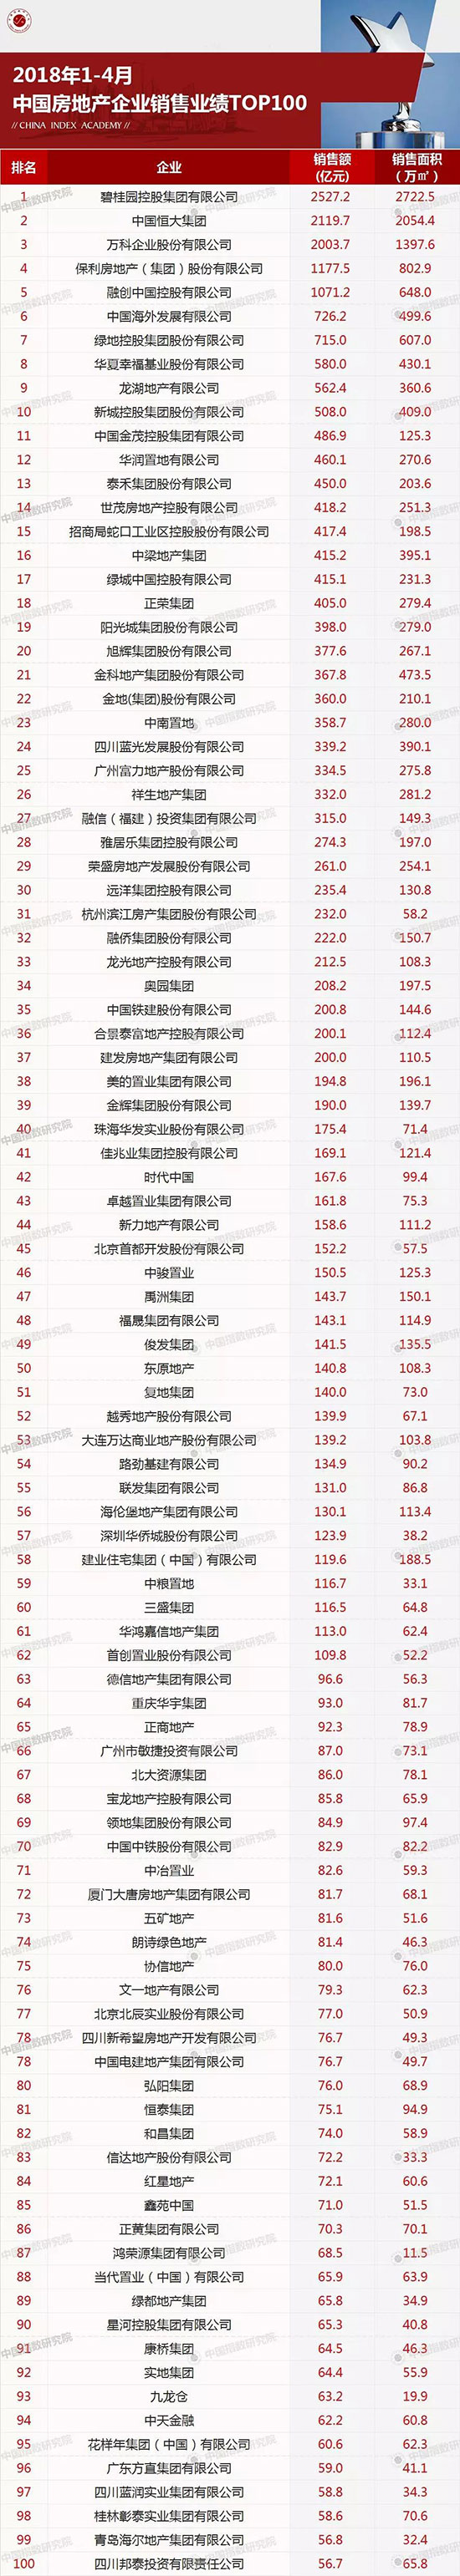 2018年1-4月中国房地产企业销售业绩TOP100-中国网地产